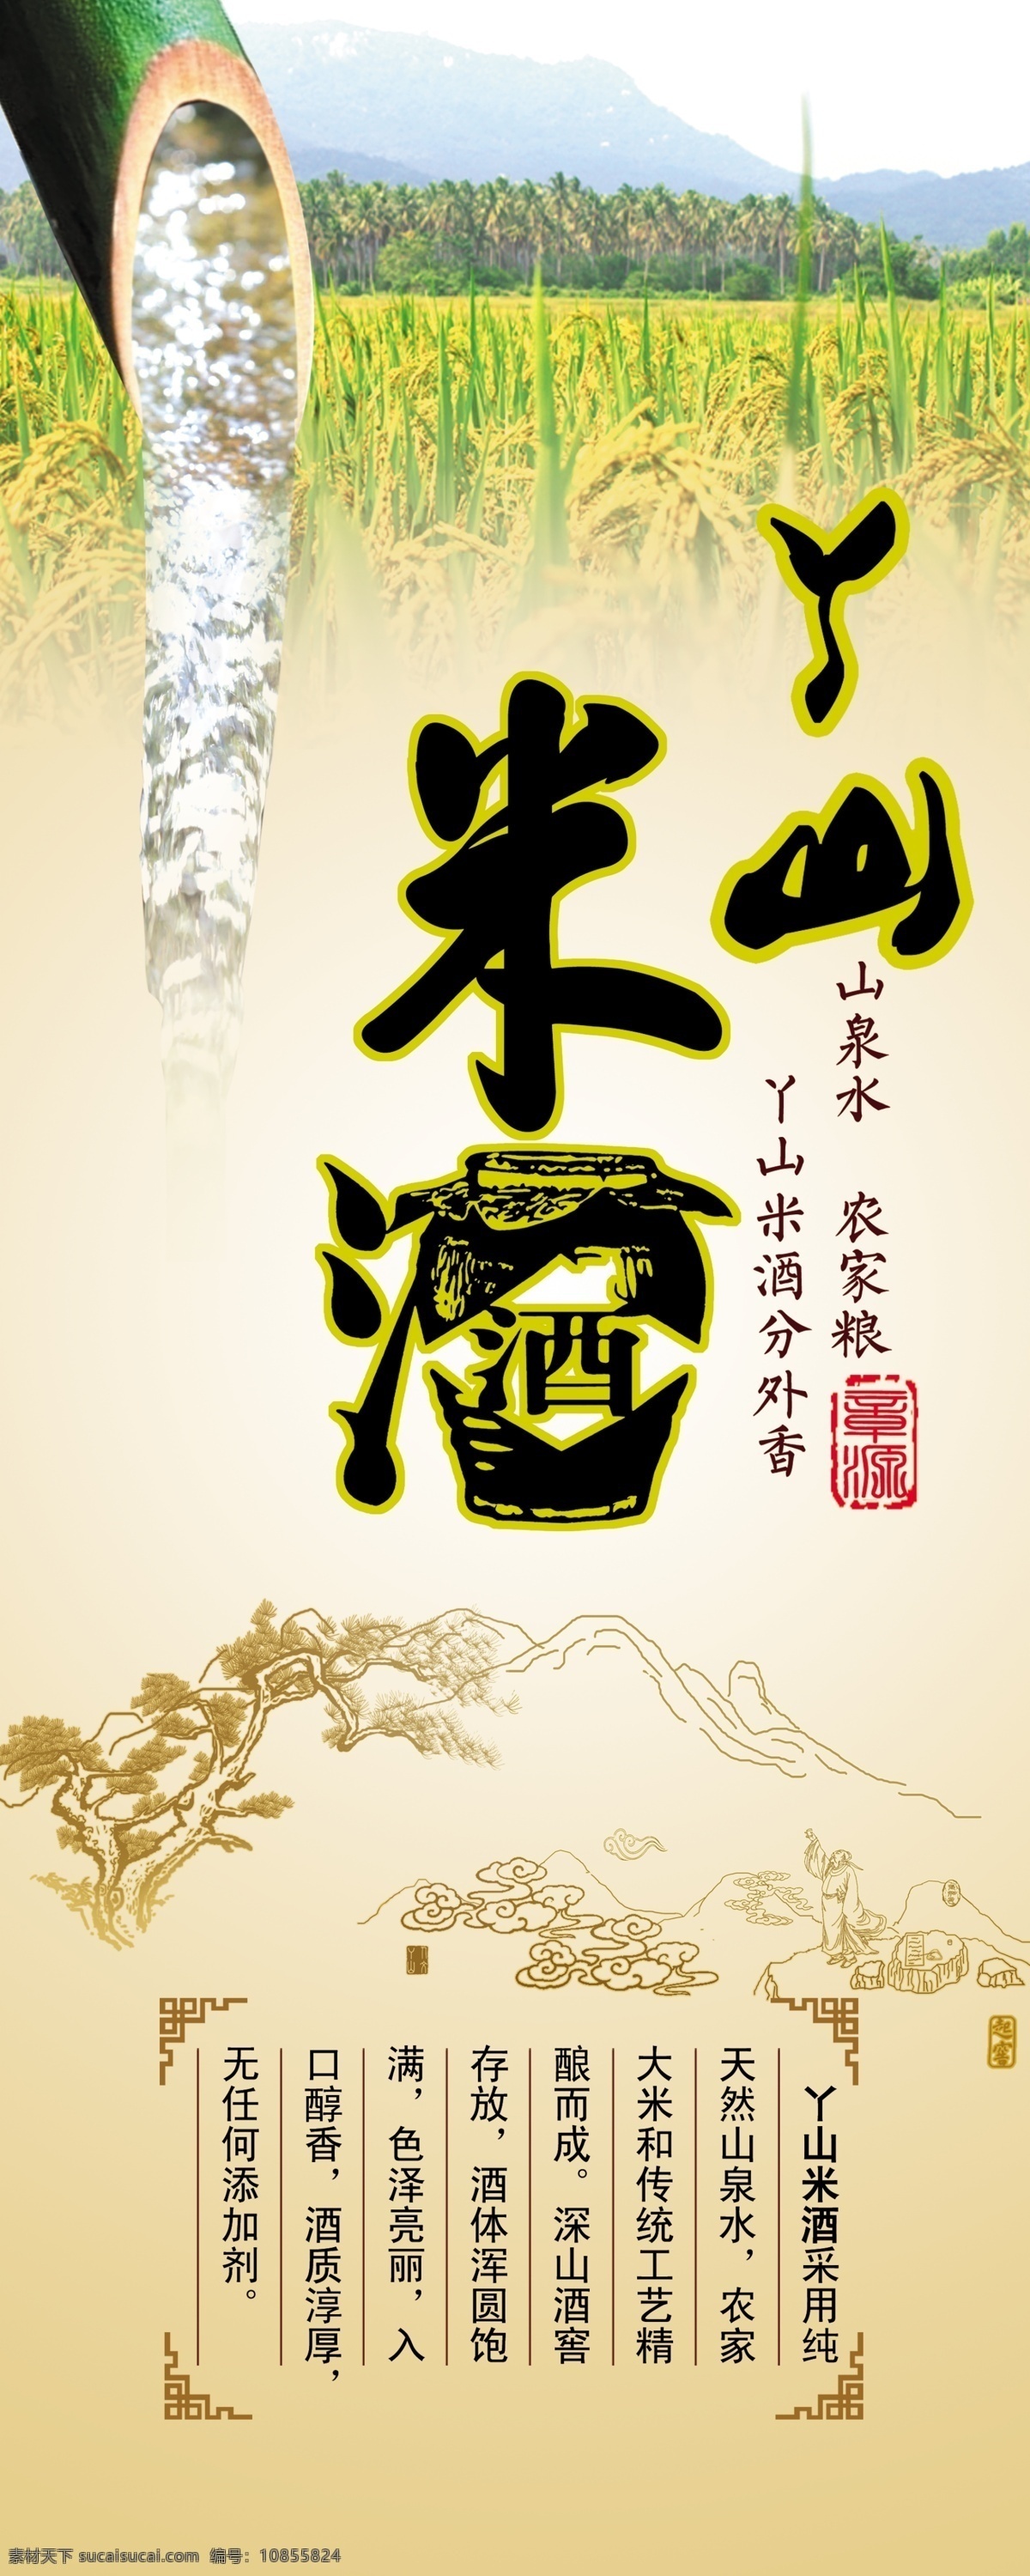 米酒海报 稻田 米酒字体 竹子水 山 黄色背景 广告设计模板 源文件